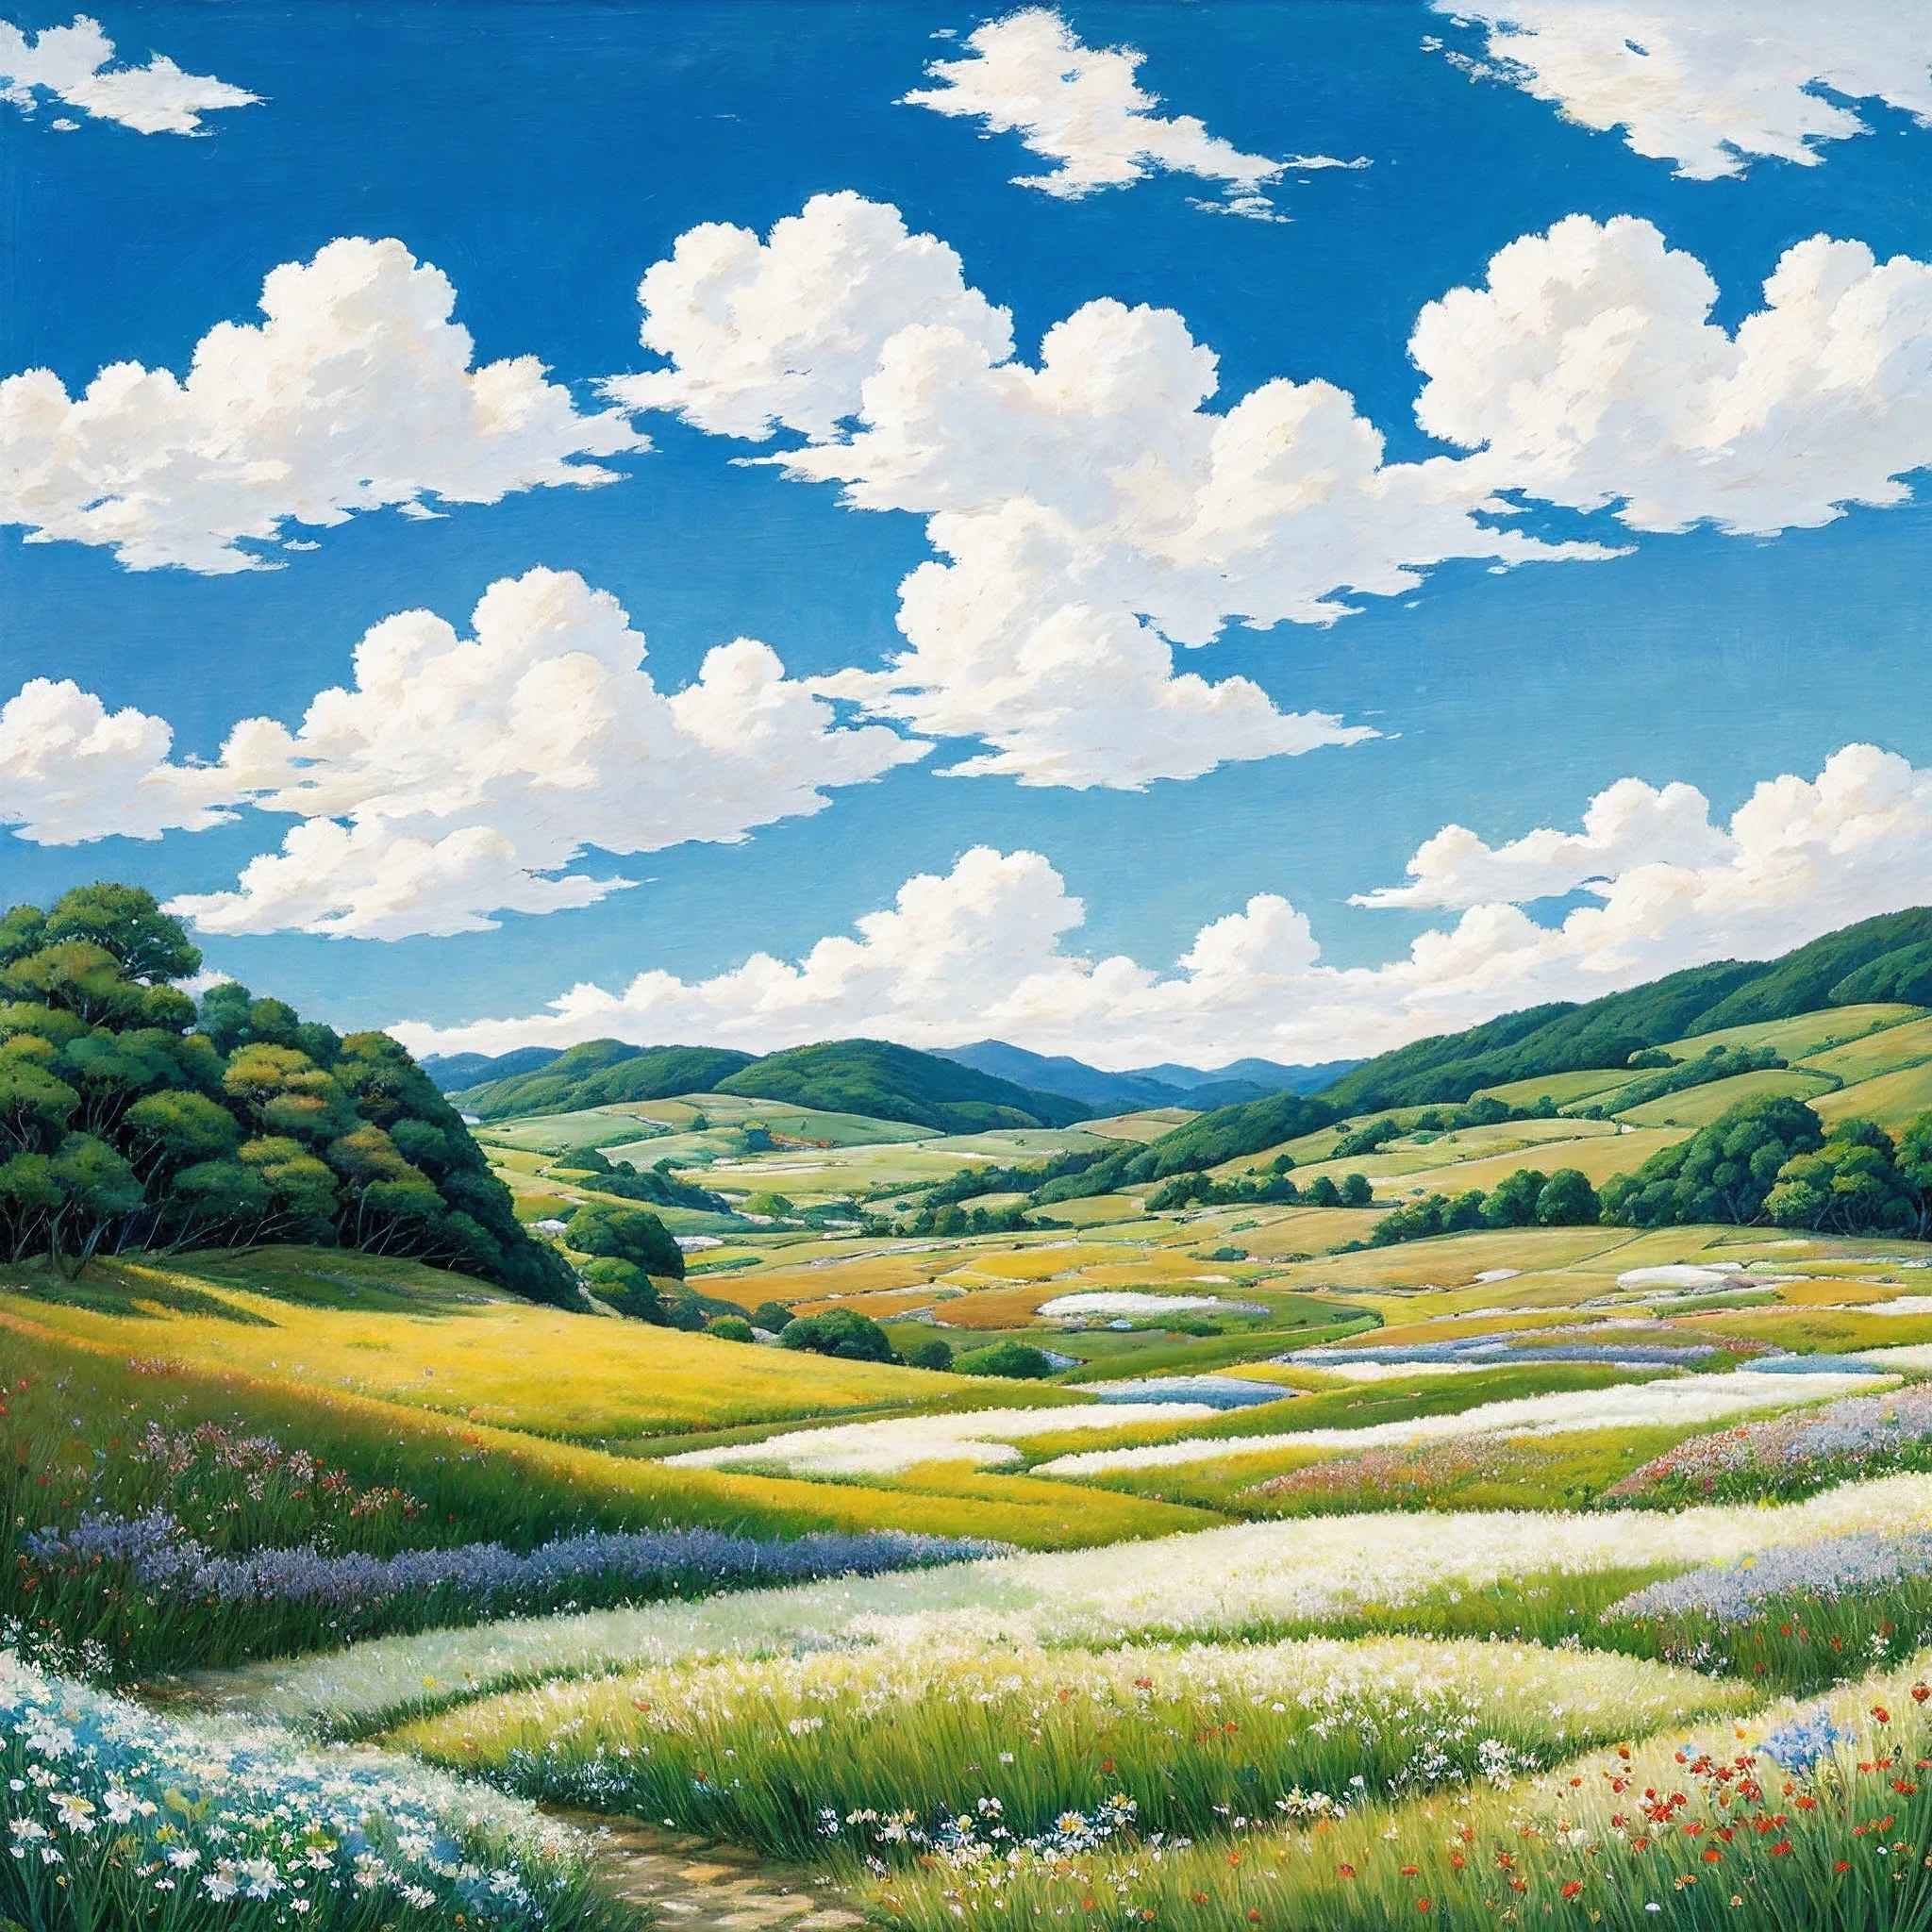 現実的, 本物, 美しく素晴らしい風景油絵スタジオジブリ宮崎駿&#39;青い空と白い雲の花びらの草原